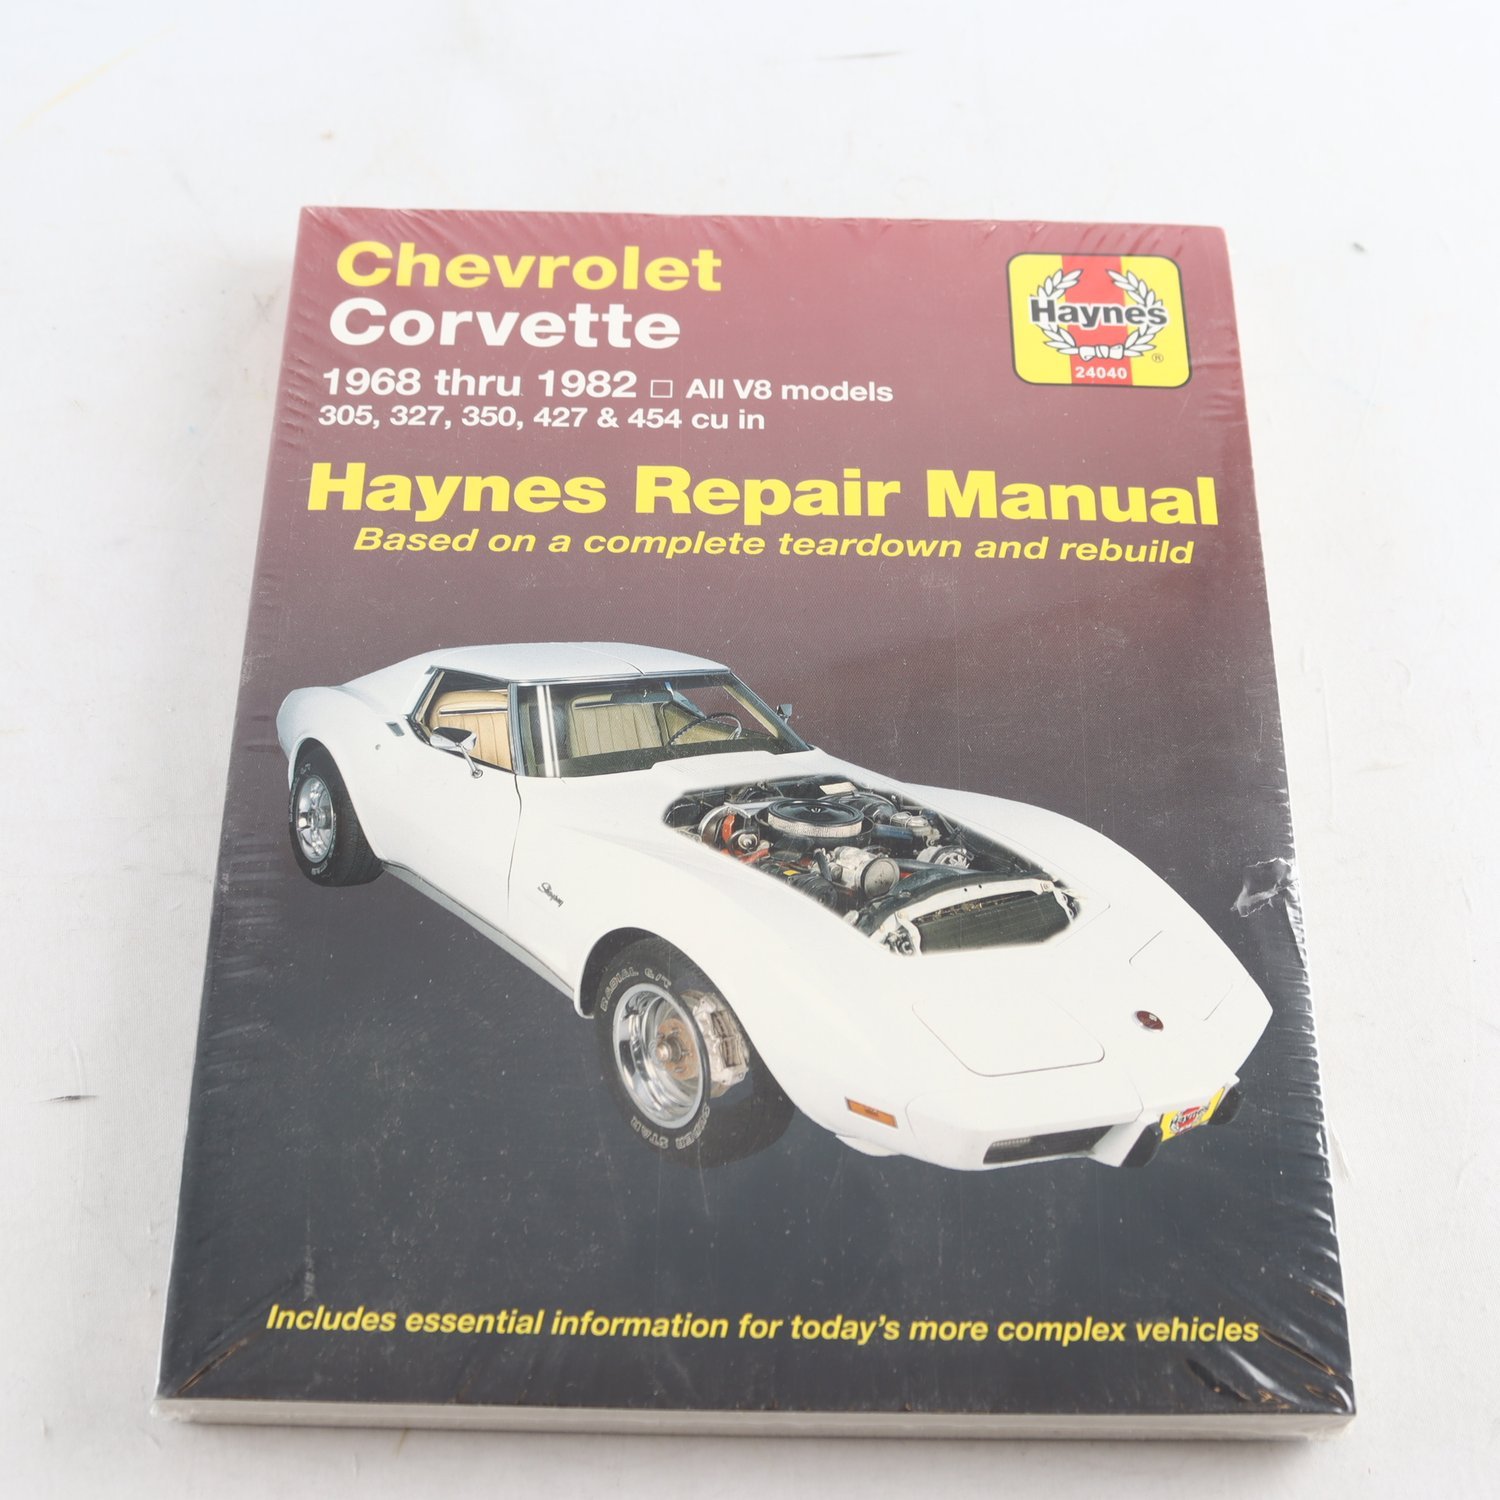 Chevrolet Corvette 1968 thru 1982, Haynes Repair Manual (inplastad)